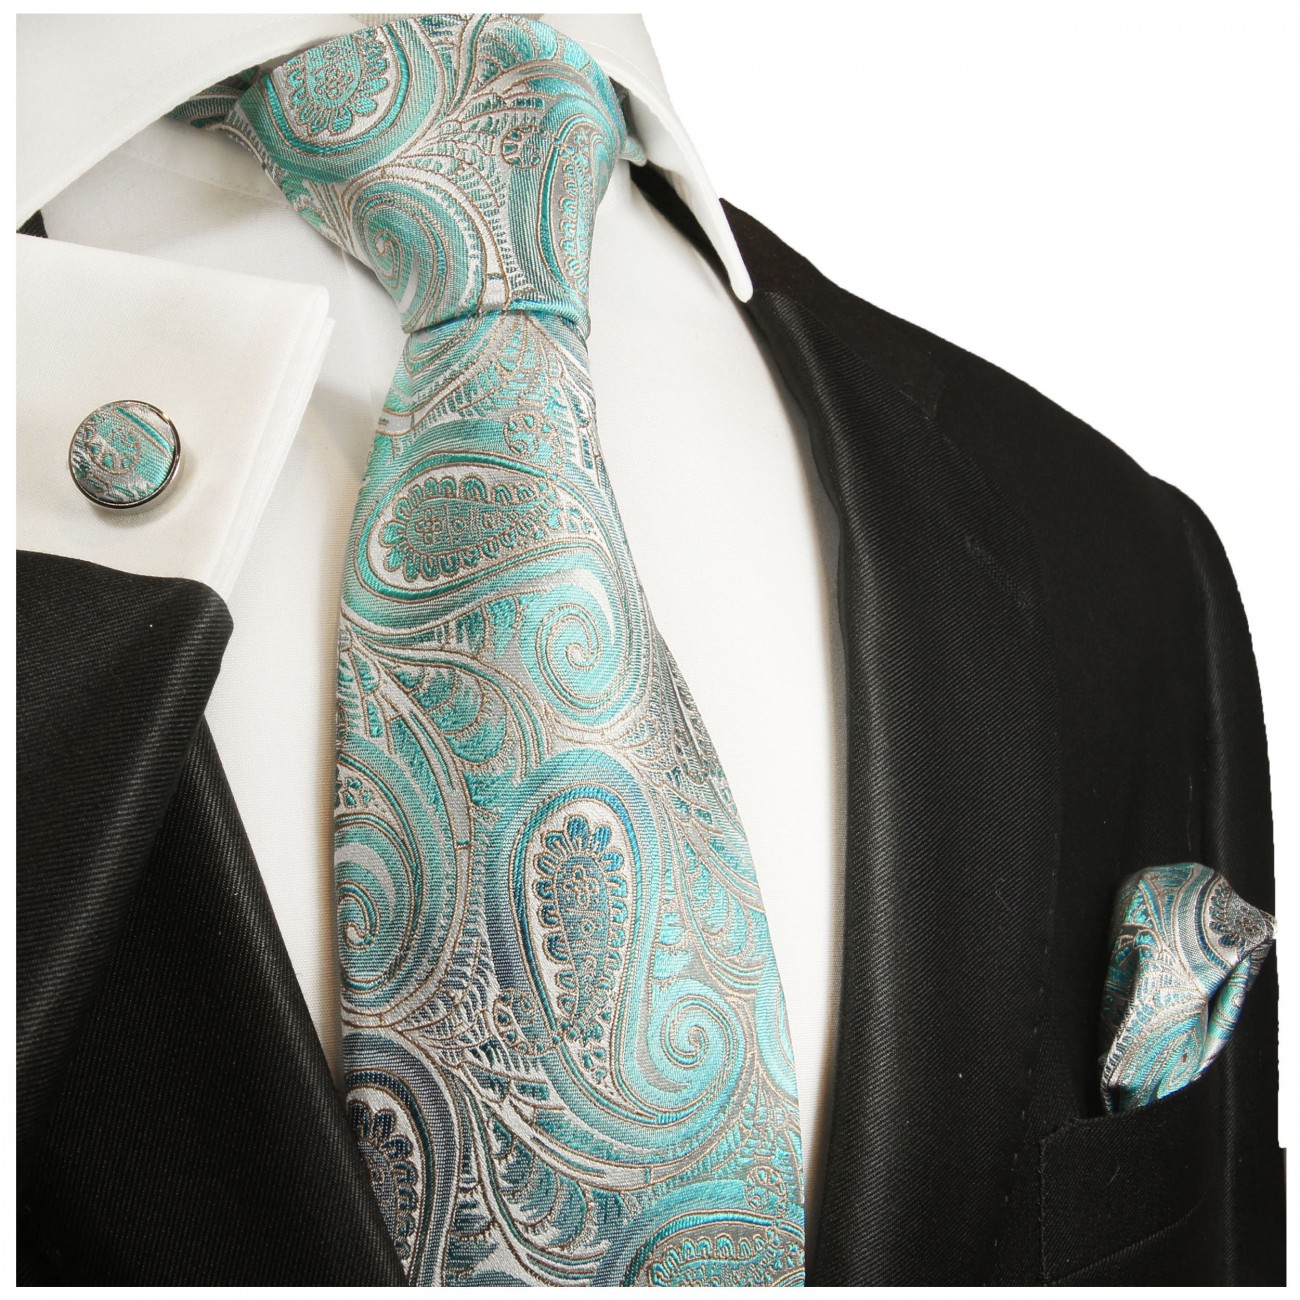 Krawatte türkis mit Einstecktuch und Manschettenknöpfe grau paisley 2016